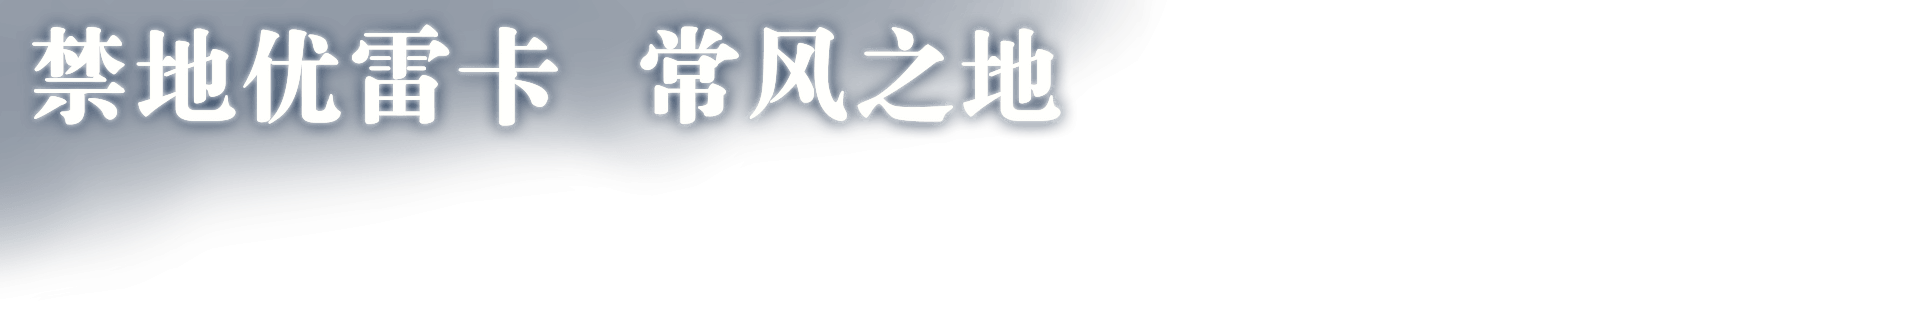 4 2版本专题 曙光微明 最终幻想14 官方网站